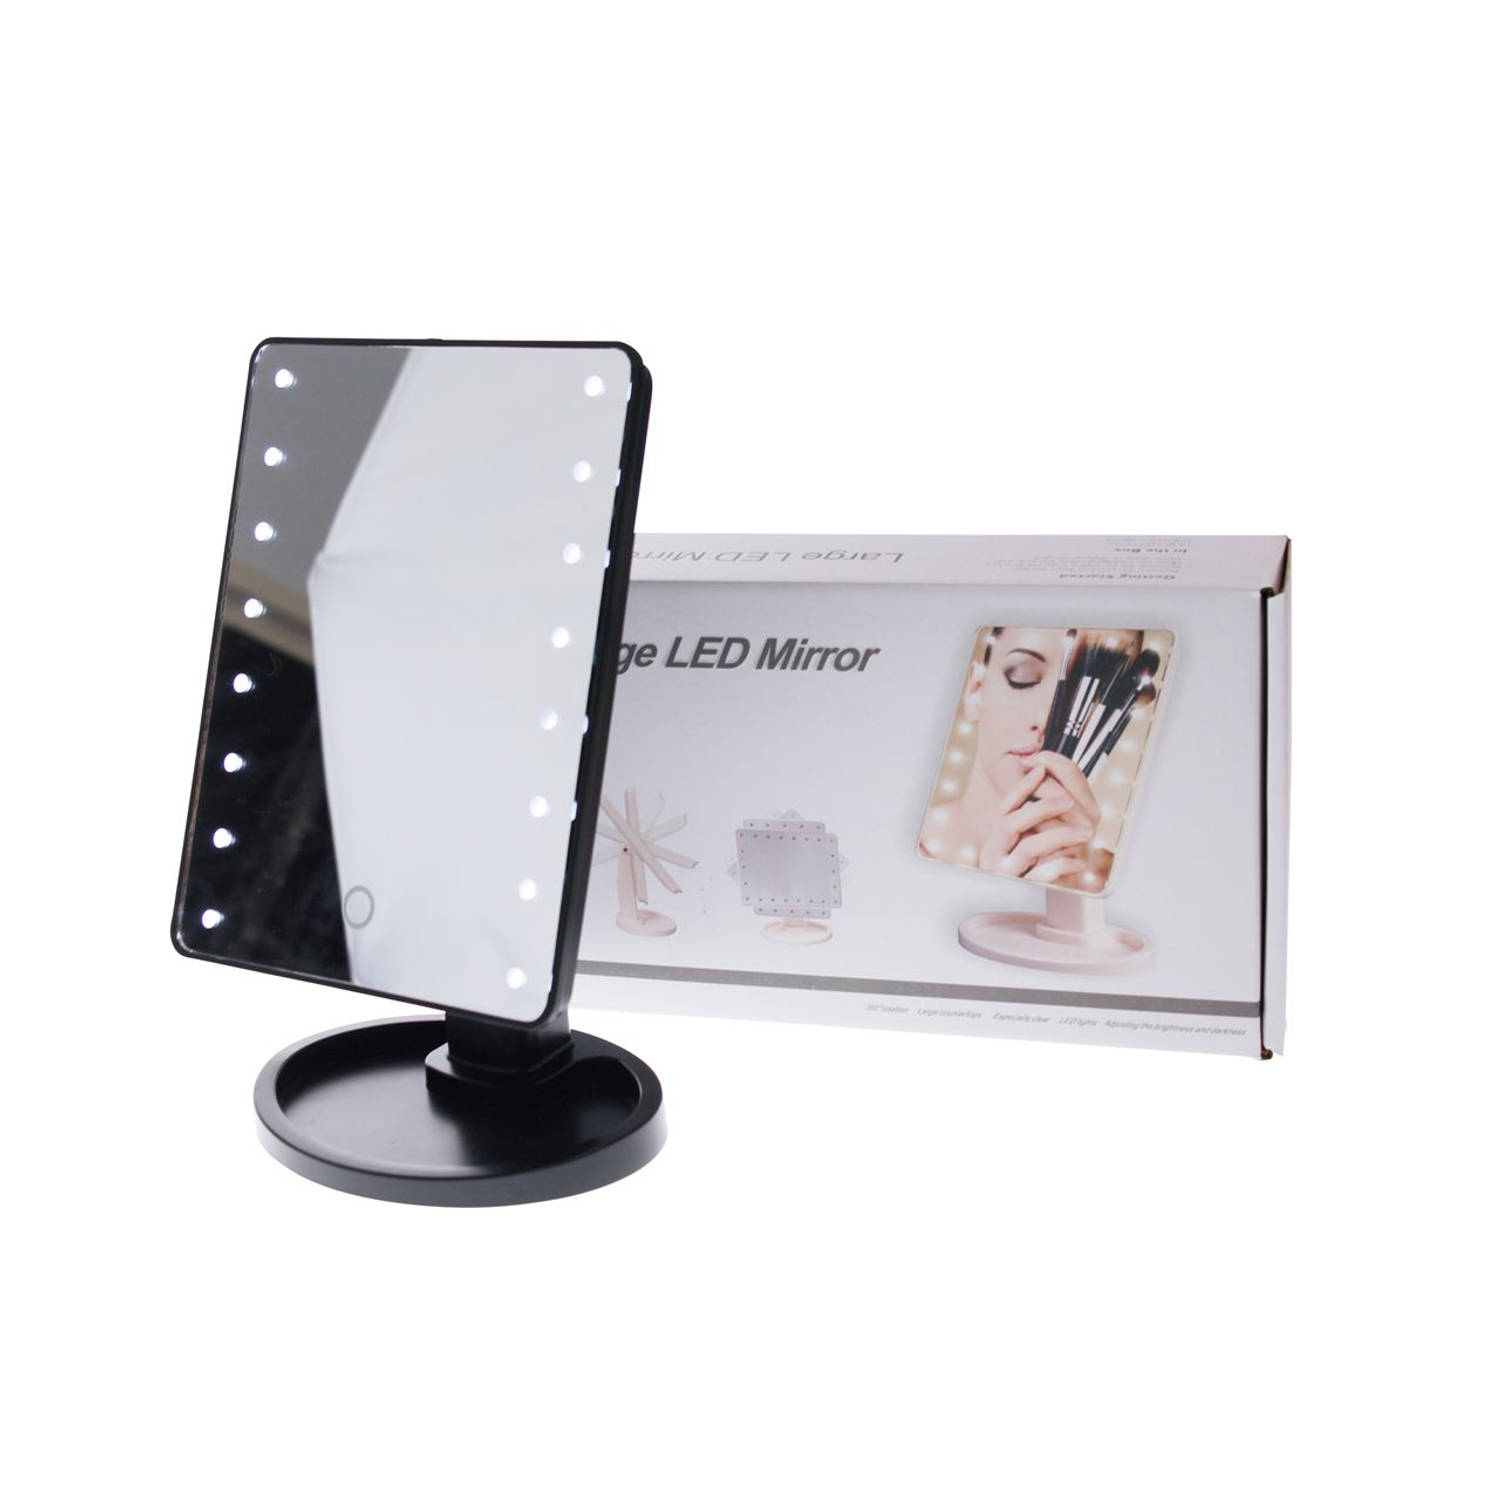 Trouw Vies Vochtig Touch Screen Make-Up Spiegel met LED verlichting - Zwart | Blokker